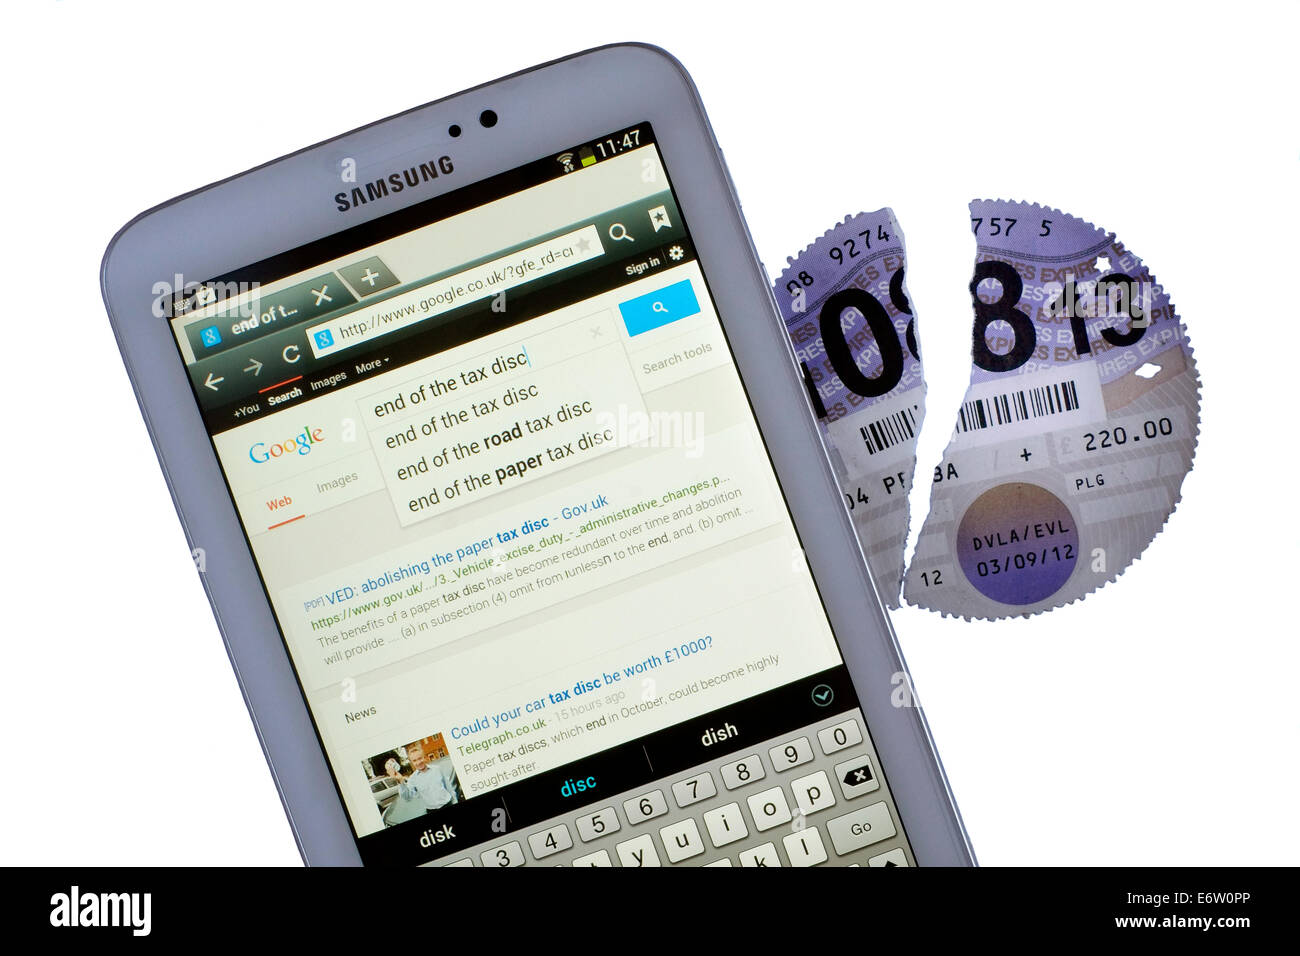 abgelaufene Papier Auto Vignette neben Tablet mit Google-Suche auf Kfz-Steuer zu erneuern aufgerissen Stockfoto